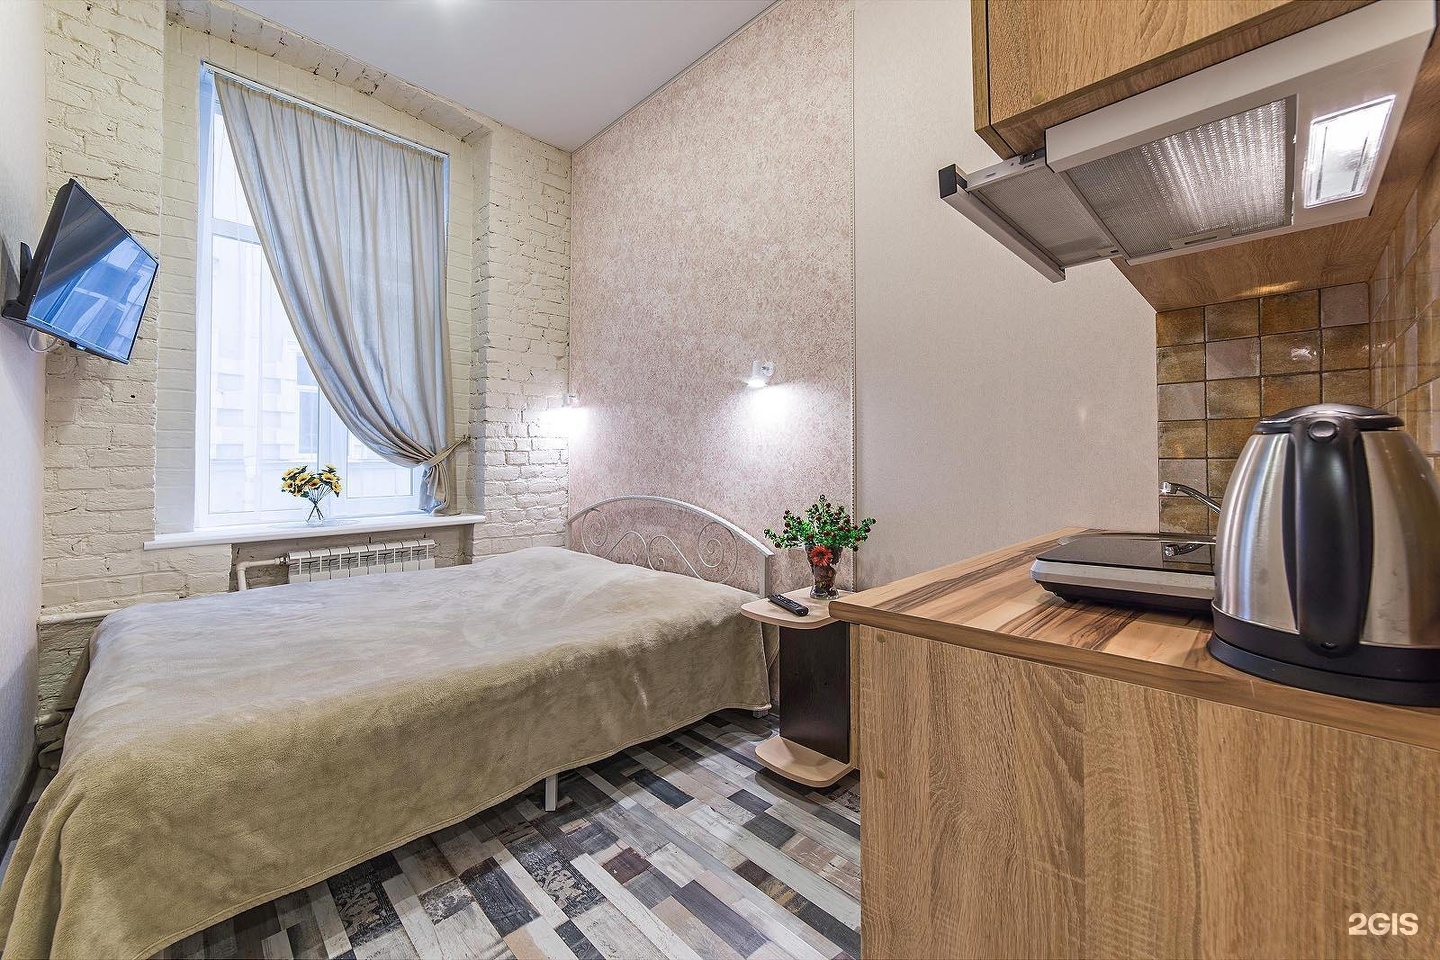 Посуточное жилье в санкт петербурге недорого без посредников